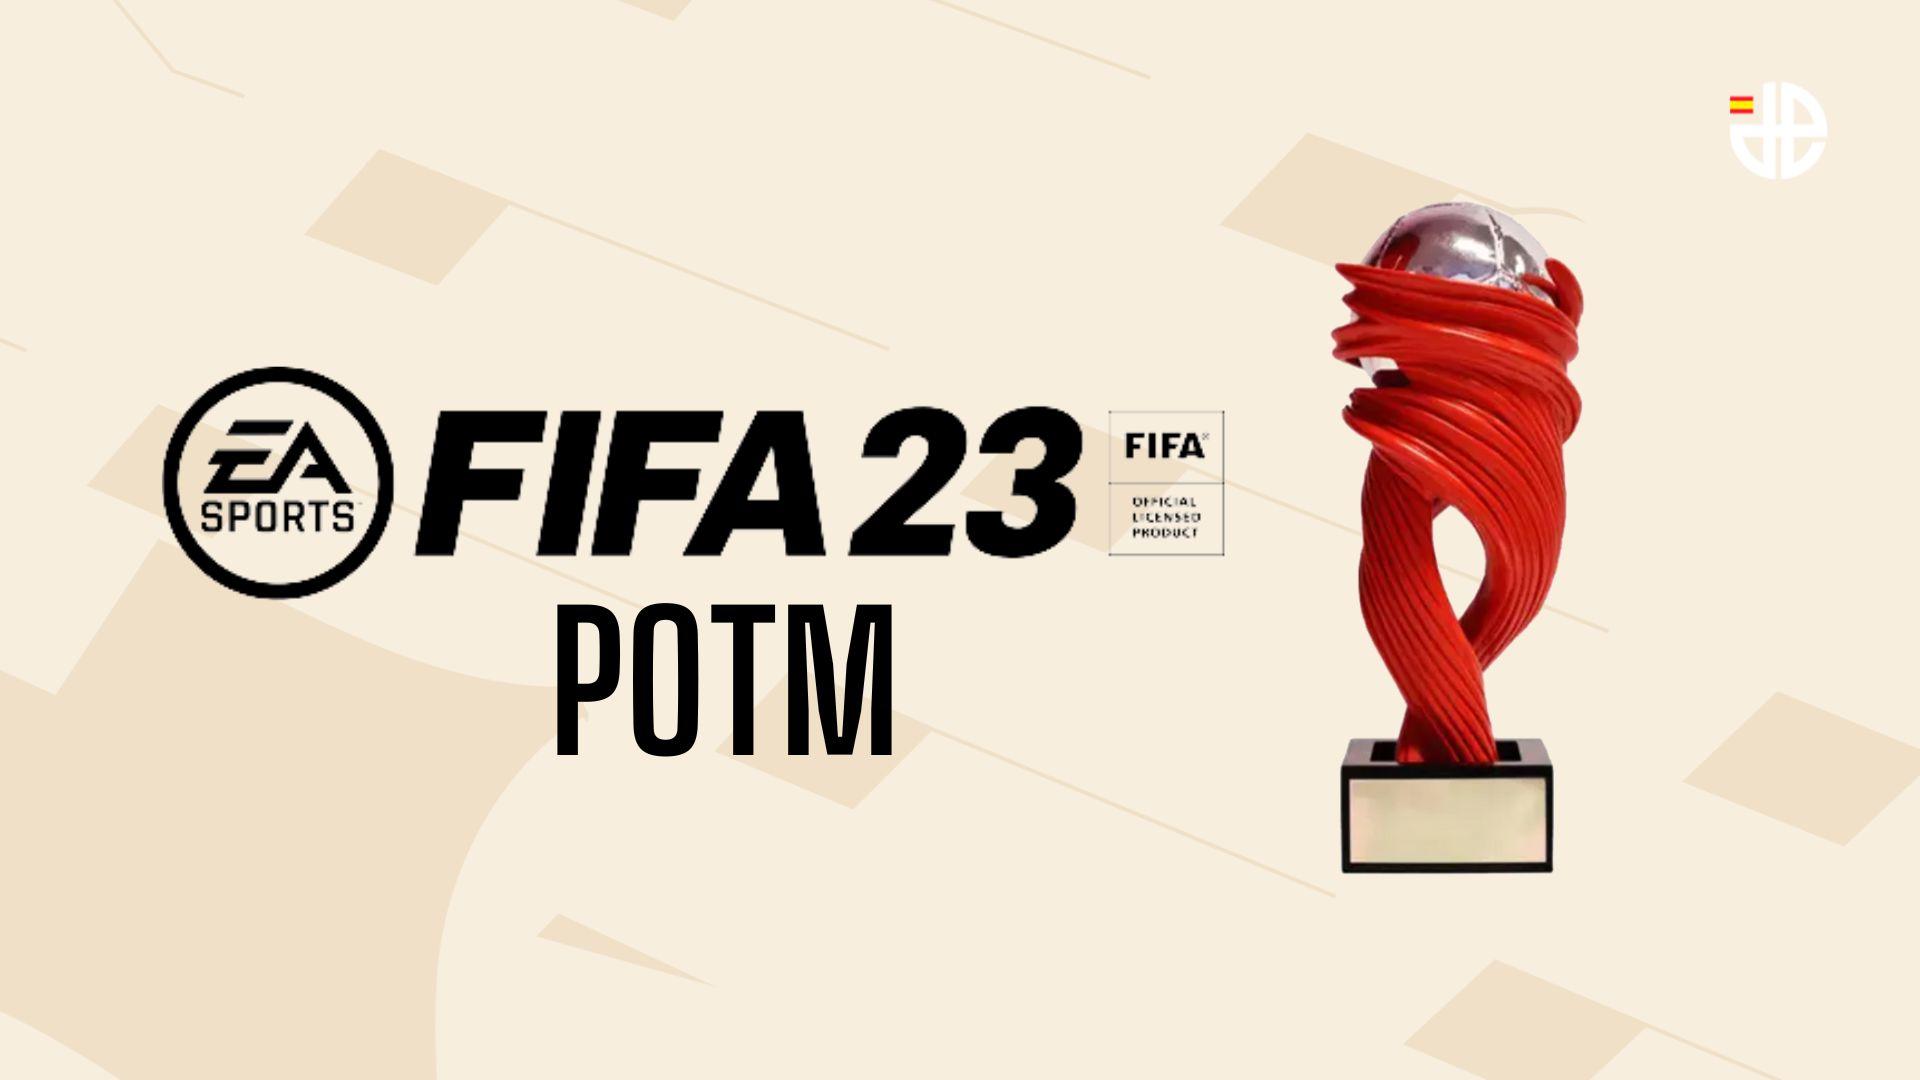 trofeo potm de La Liga en FIFA 23